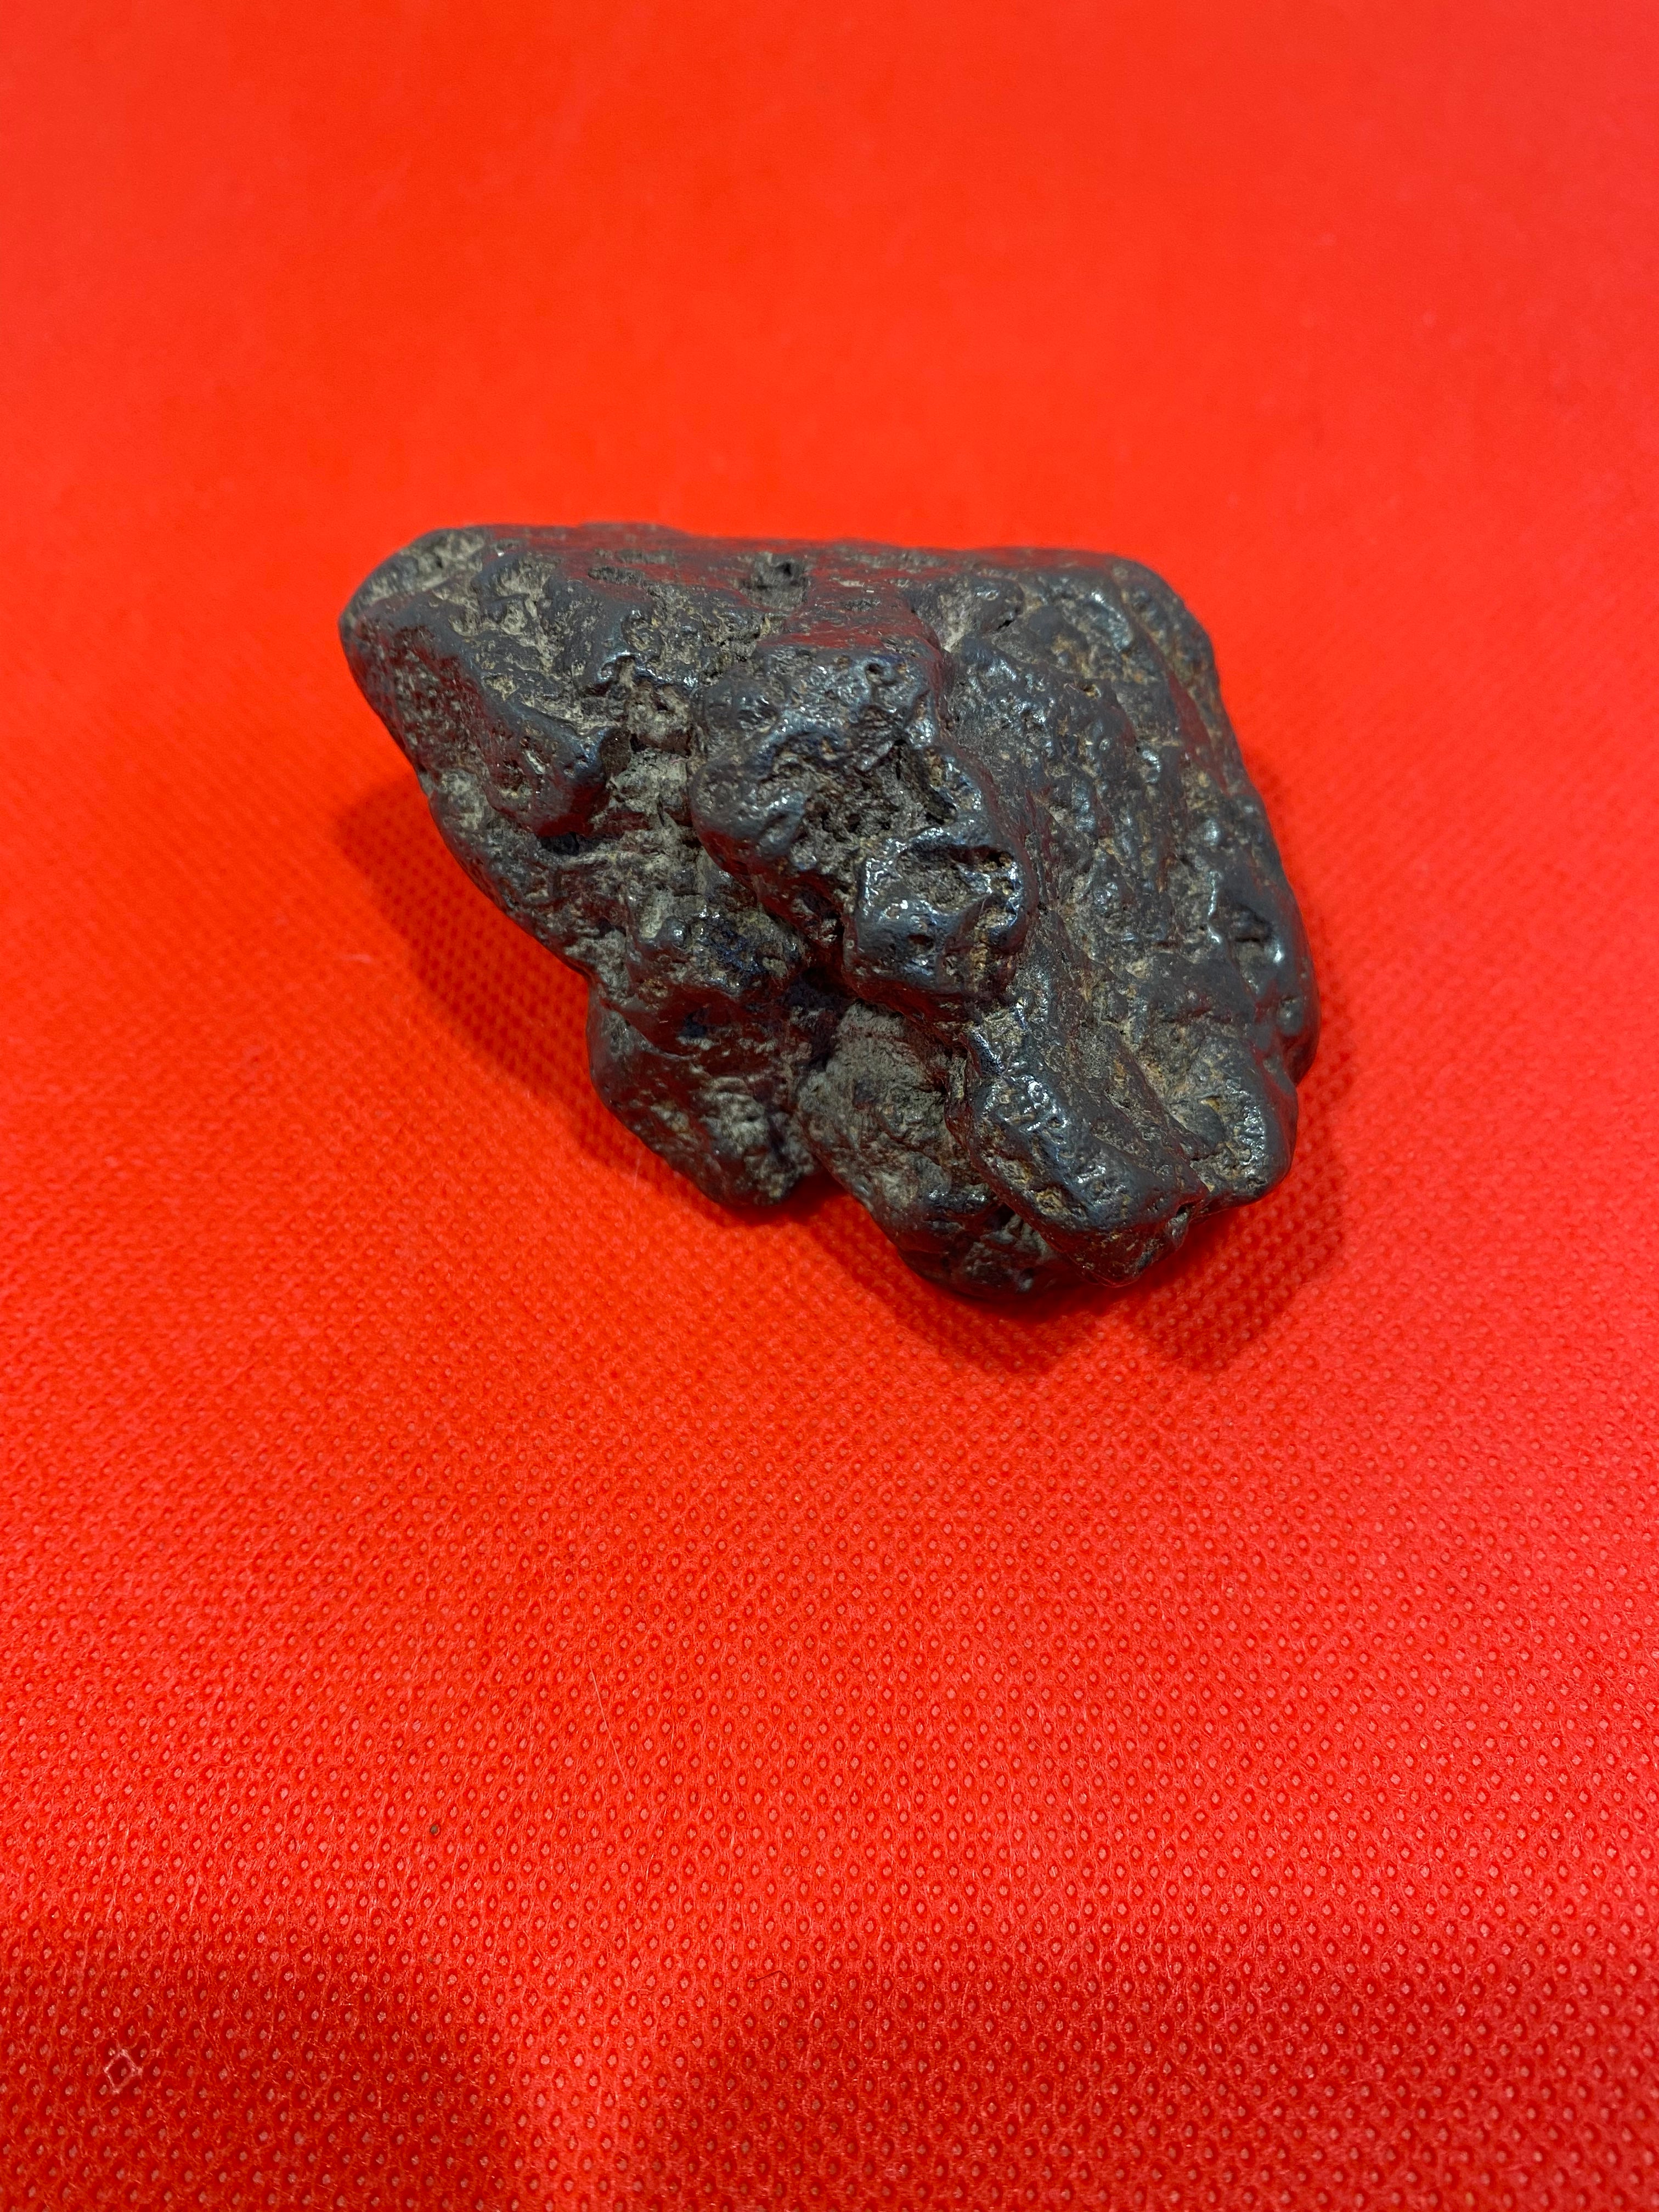 Meteorite “ campo del cielo” Argentina 278 gr.